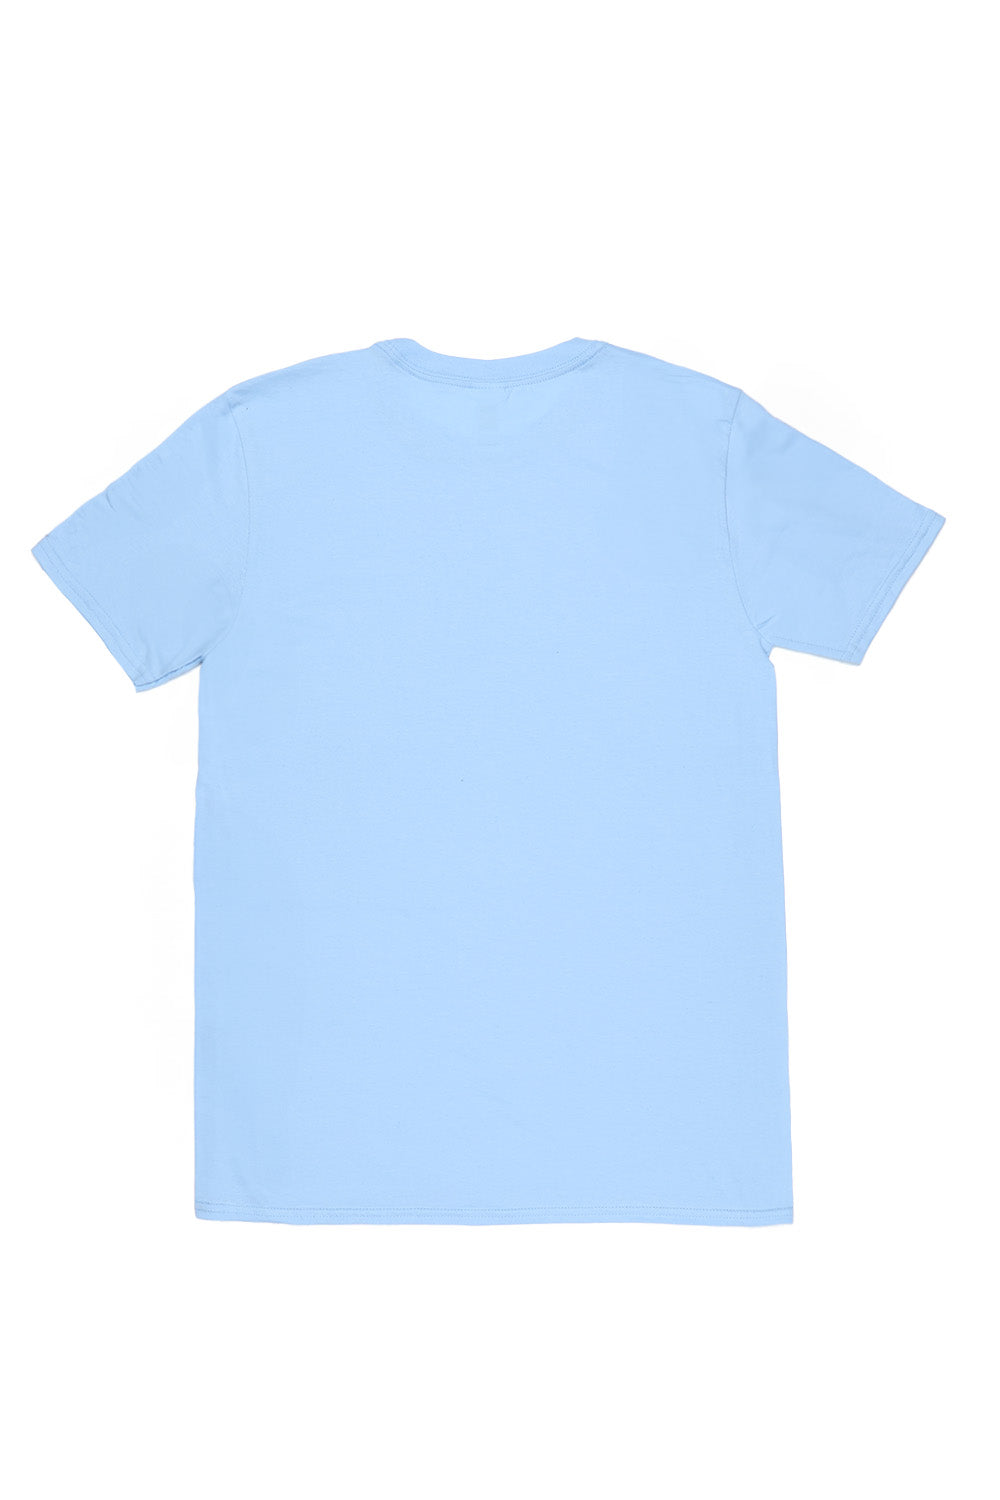 LA T-Shirt in Light Blue (Custom Packs)